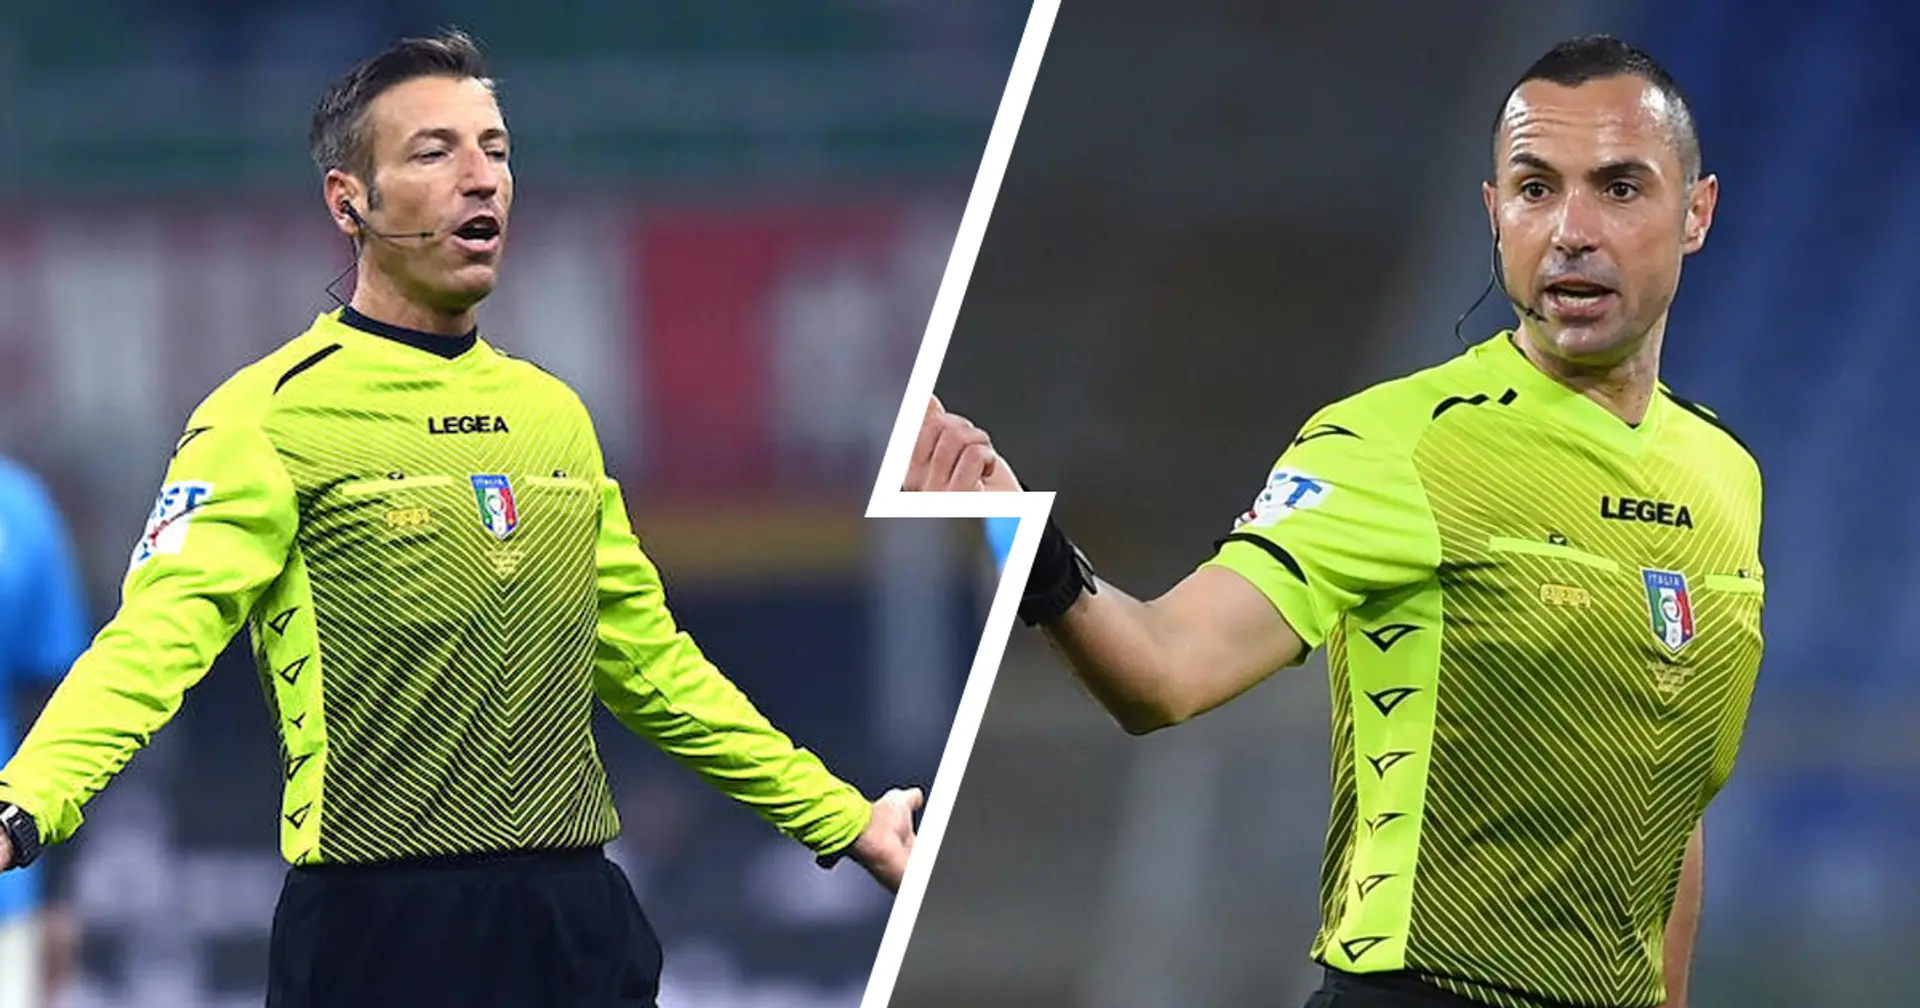 Gazzetta| Guida e Massa verso un lungo stop: mano pesante contro arbitro e VAR di Torino-Inter